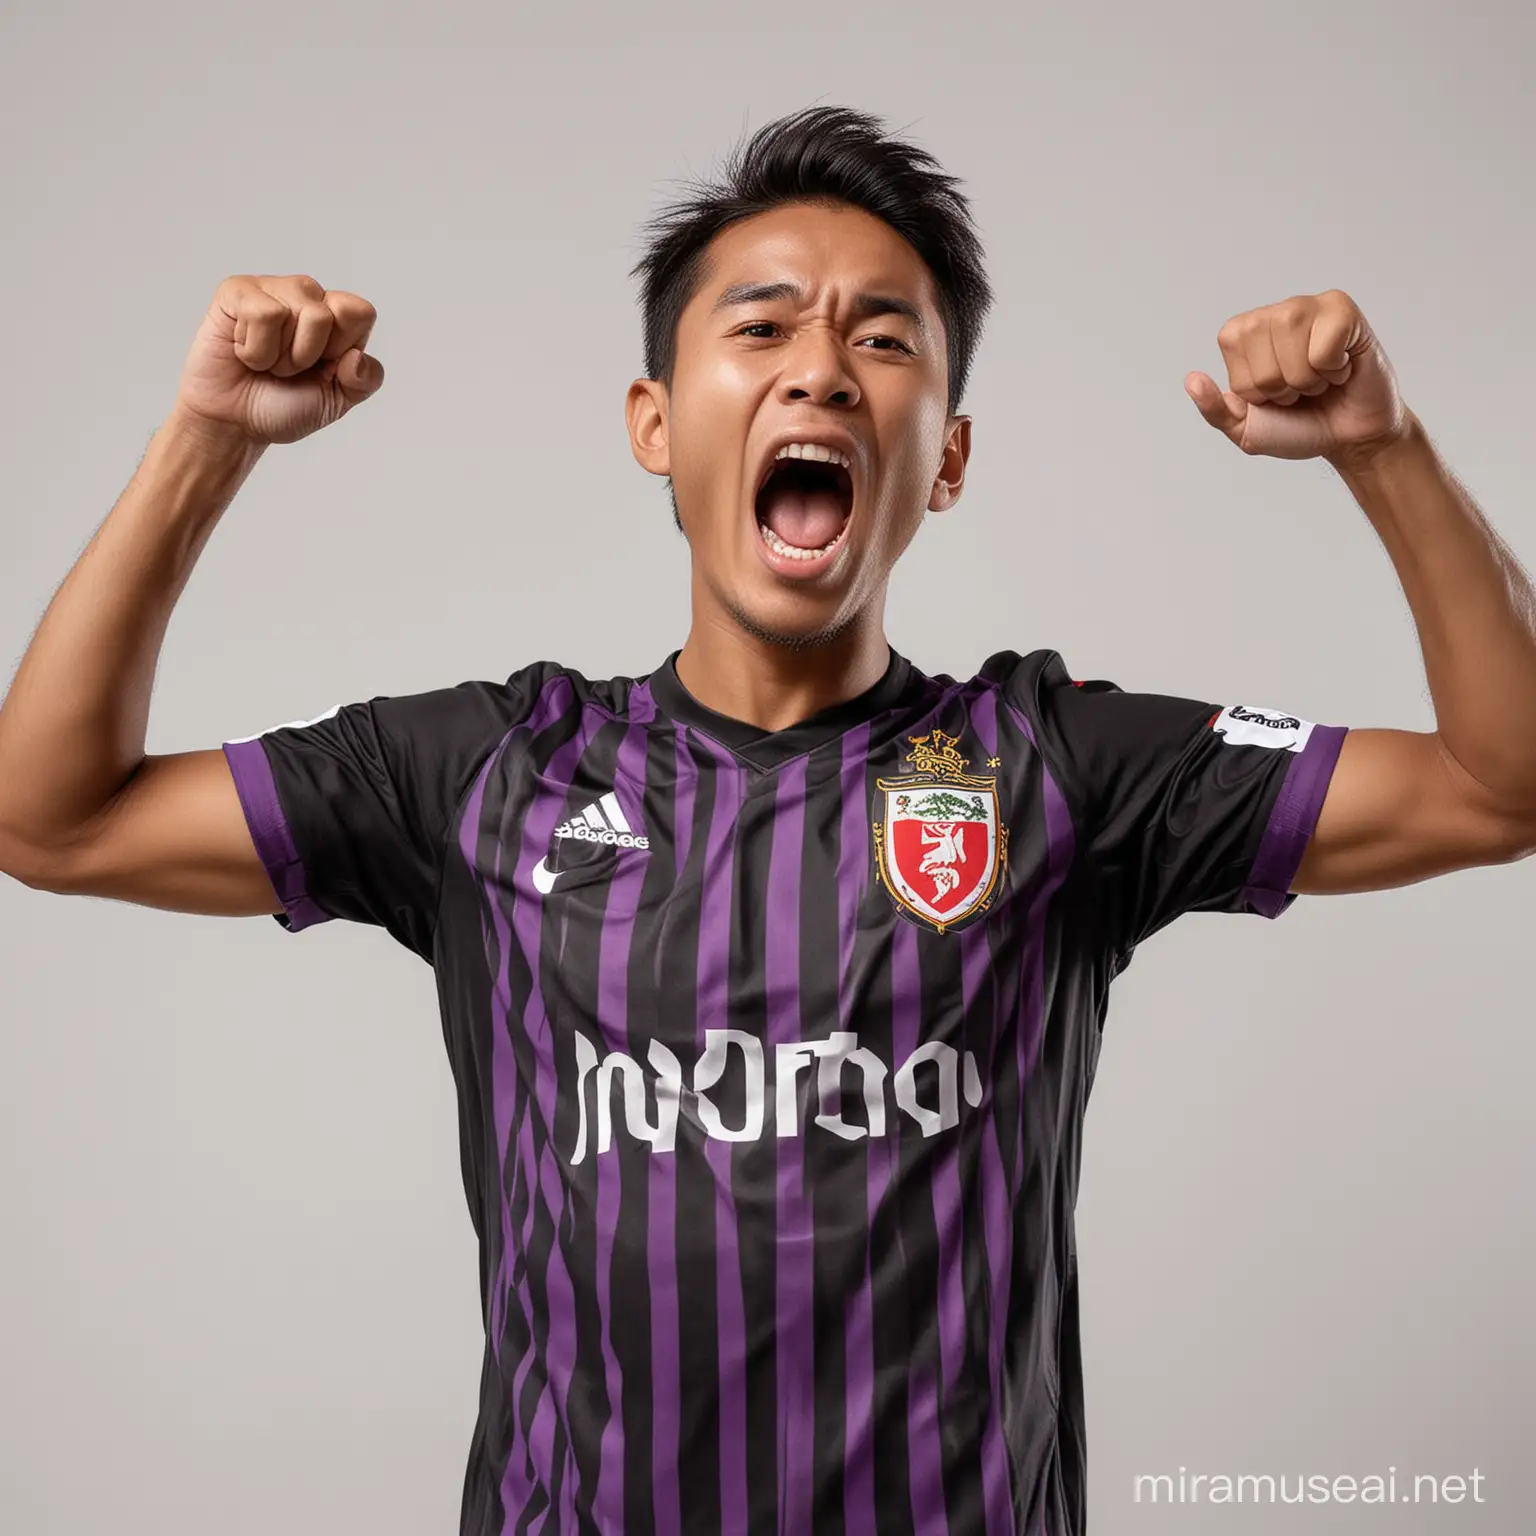 Indonesian Soccer Player Celebrating Goal in Black Team Shirt